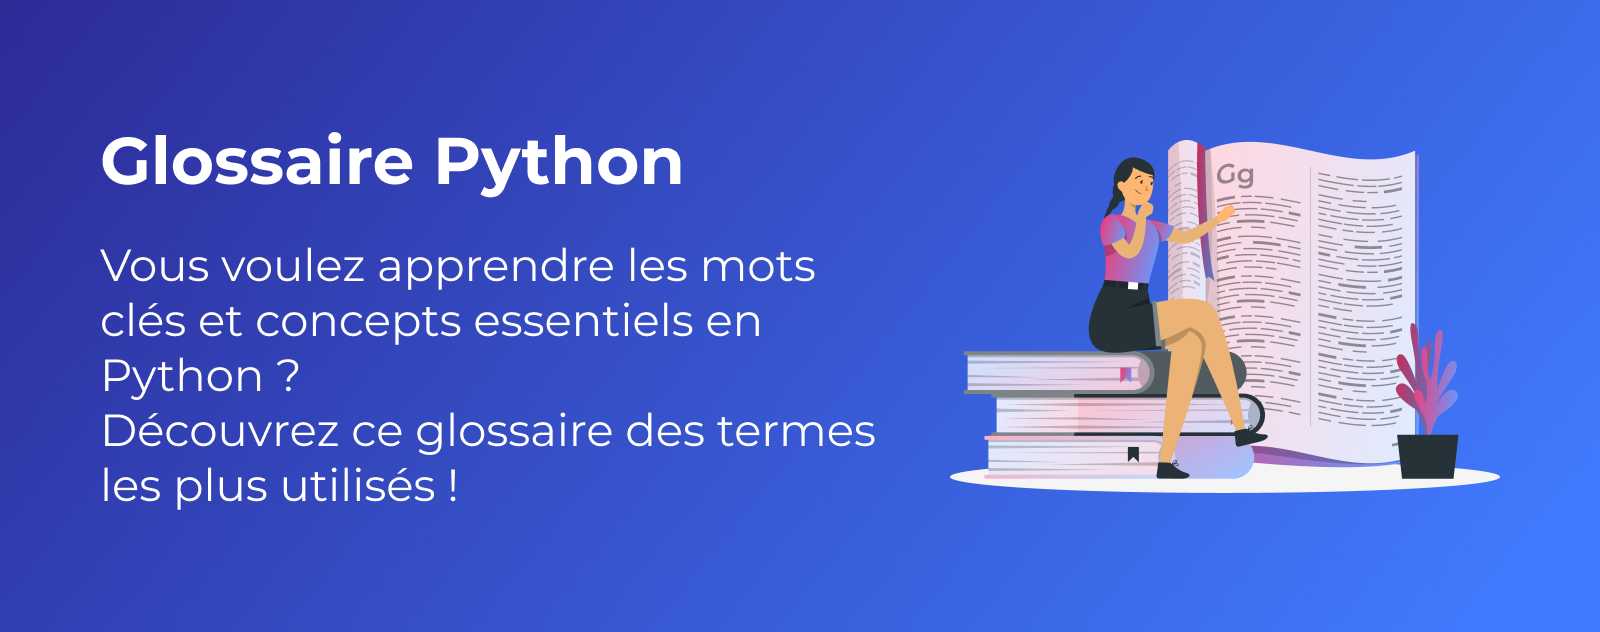 Glossaire Python - les termes les plus utiles